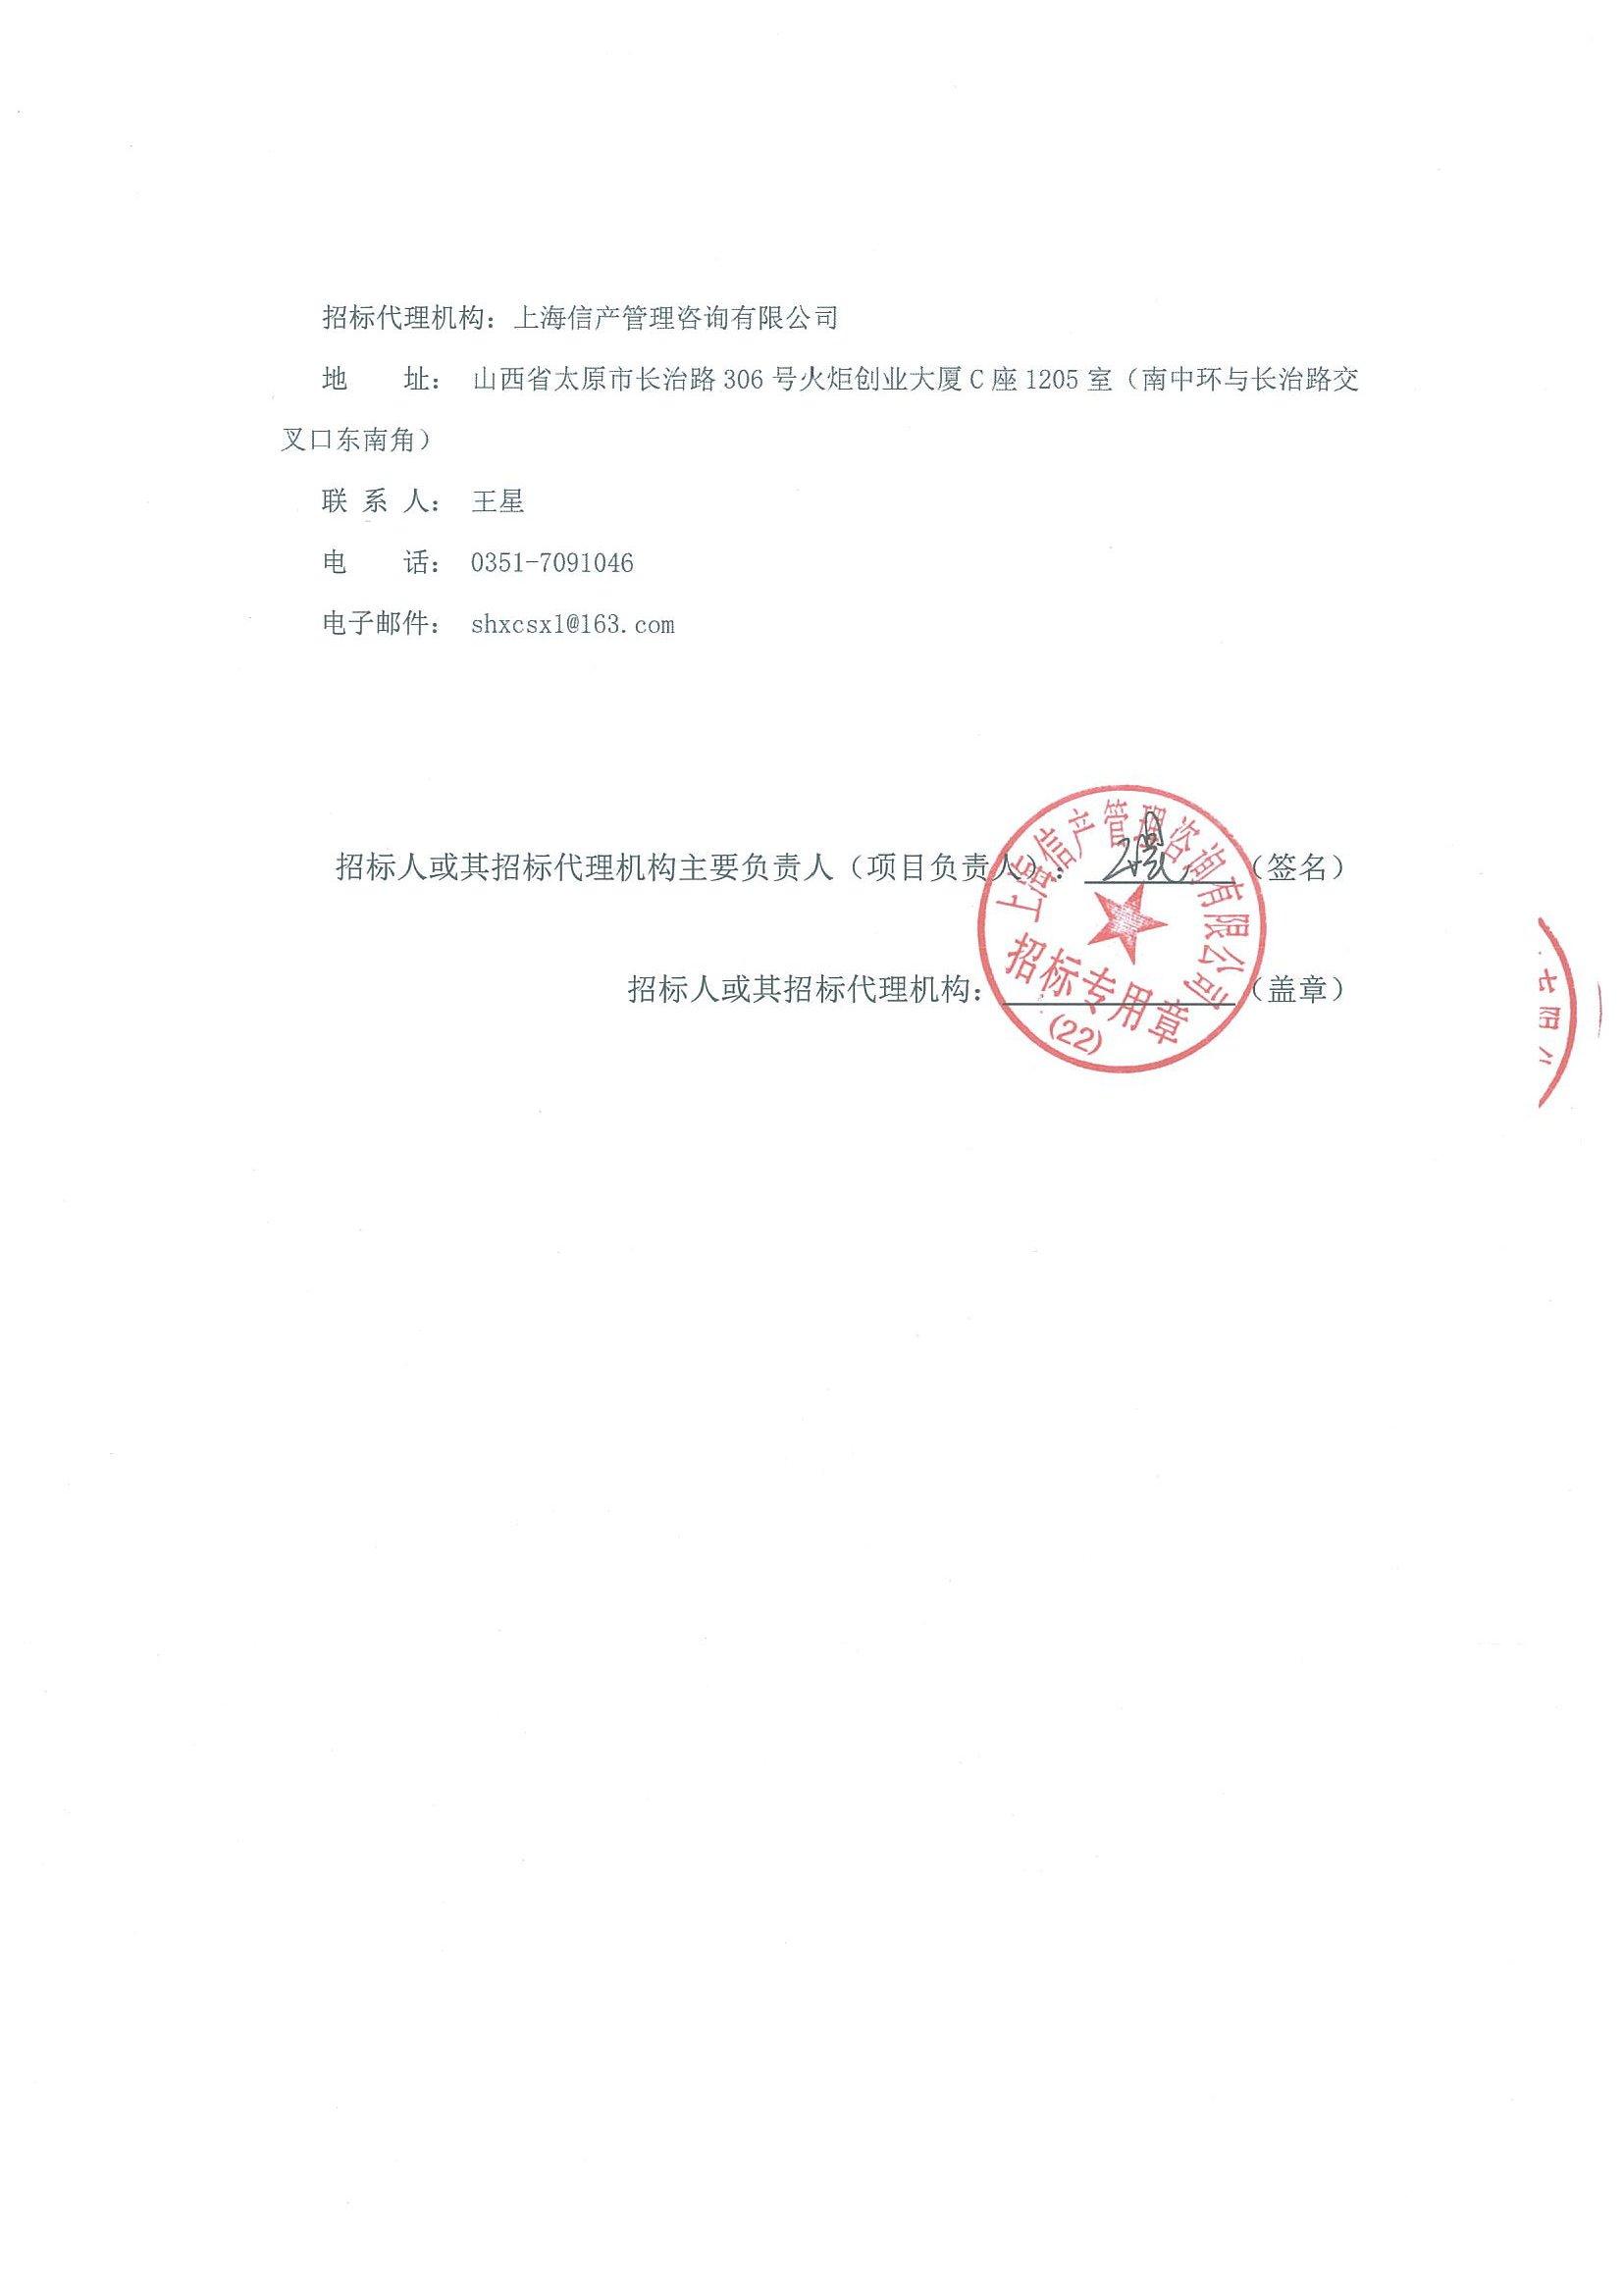 2019年中国联通山西省分公司末梢装维用机动三轮车配备项目招标公告